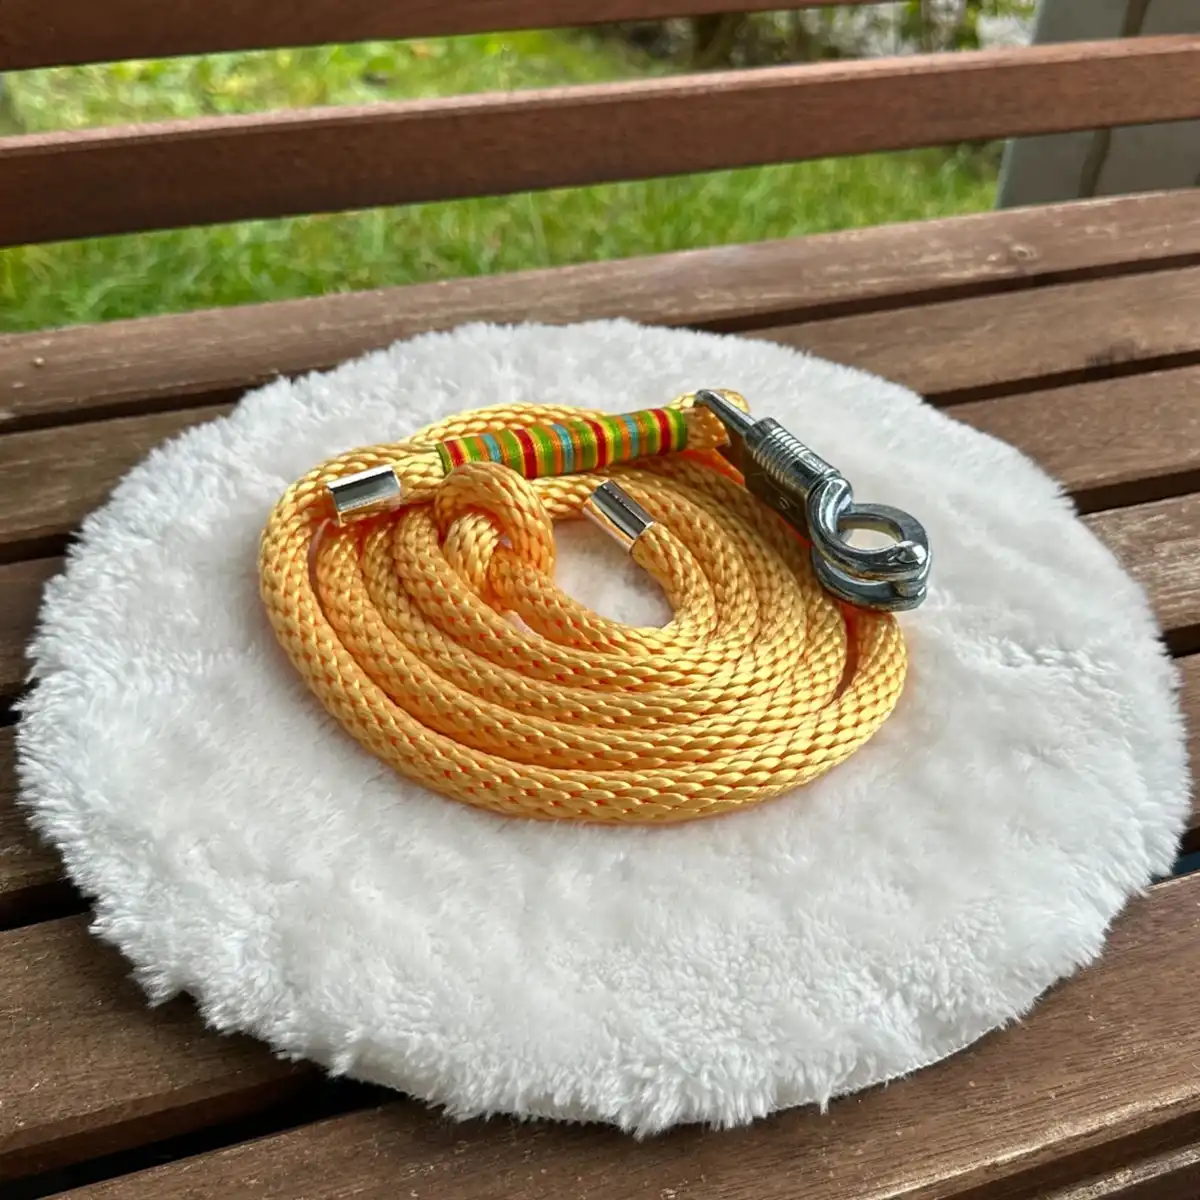 Ein Pferdeführstrick aus gelbem Tauseil auf einem weißen, runden und flauschigen Kissen, das auf einer Holzbank liegt.